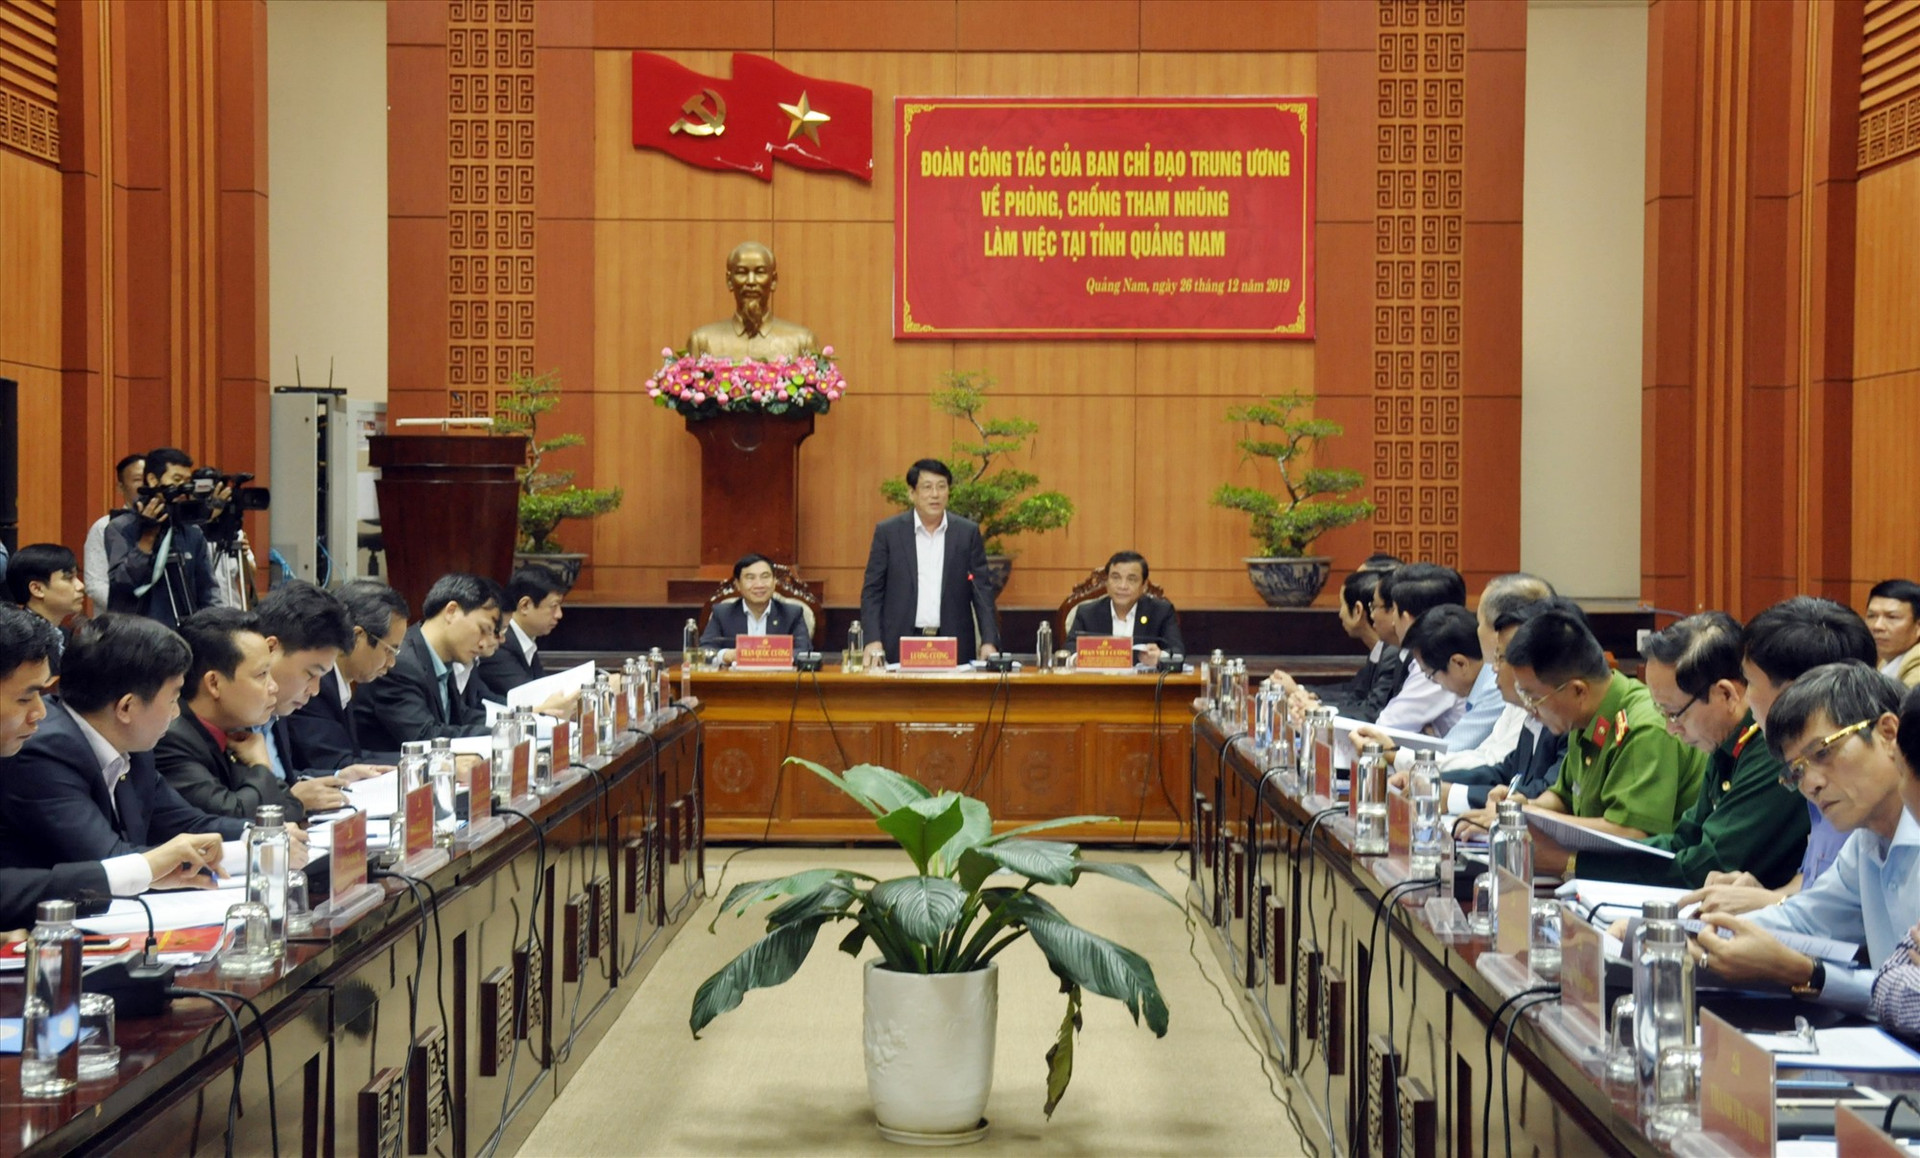 Đoàn công tác của Trung ương làm việc tại Quảng Nam về phòng chống tham nhũng. Ảnh: NGUYÊN ĐOAN